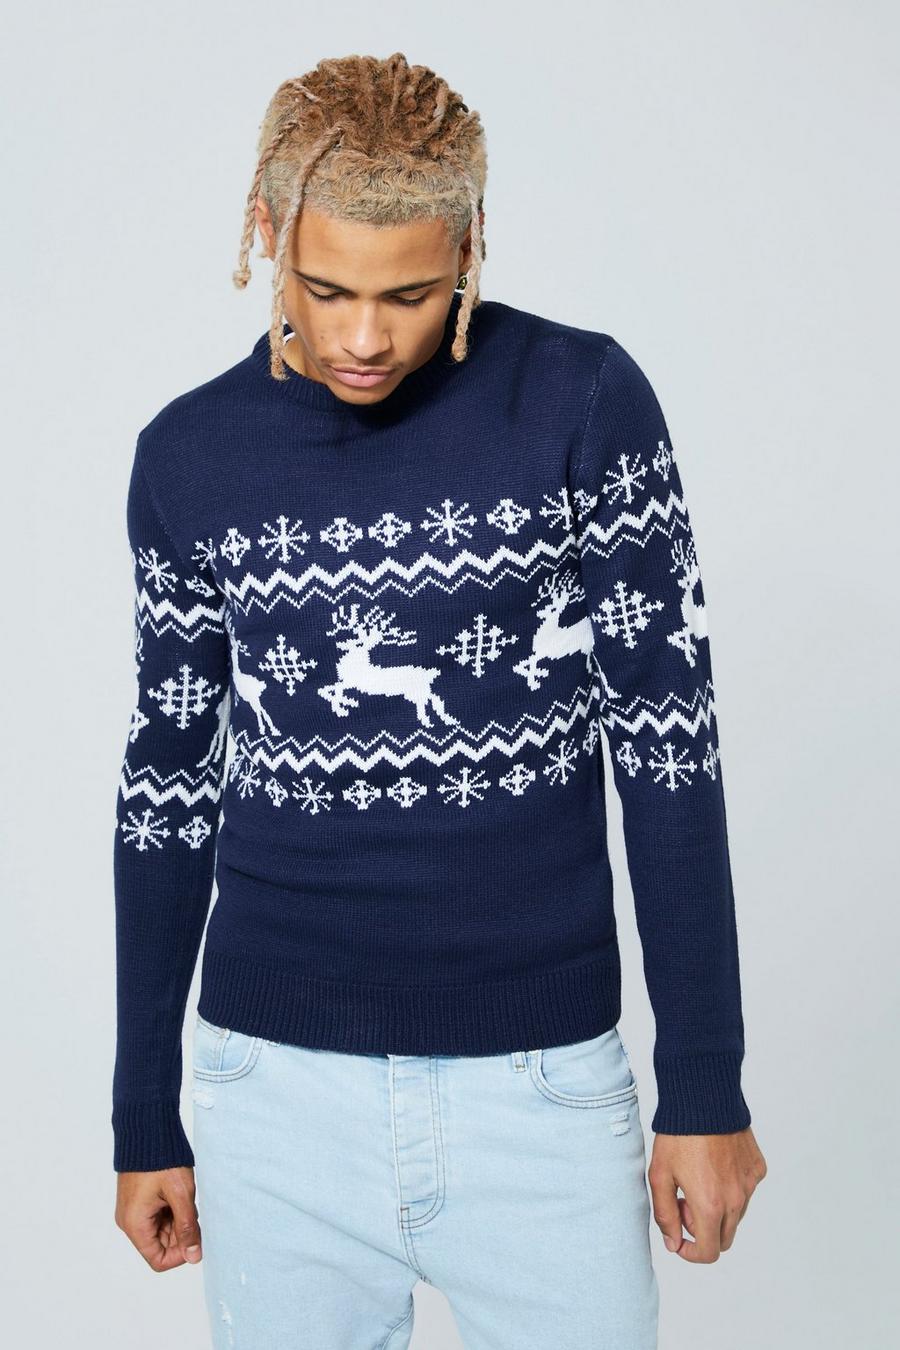 Maglione natalizio Tall con renne, pannelli e motivi Fairisle, Navy azul marino